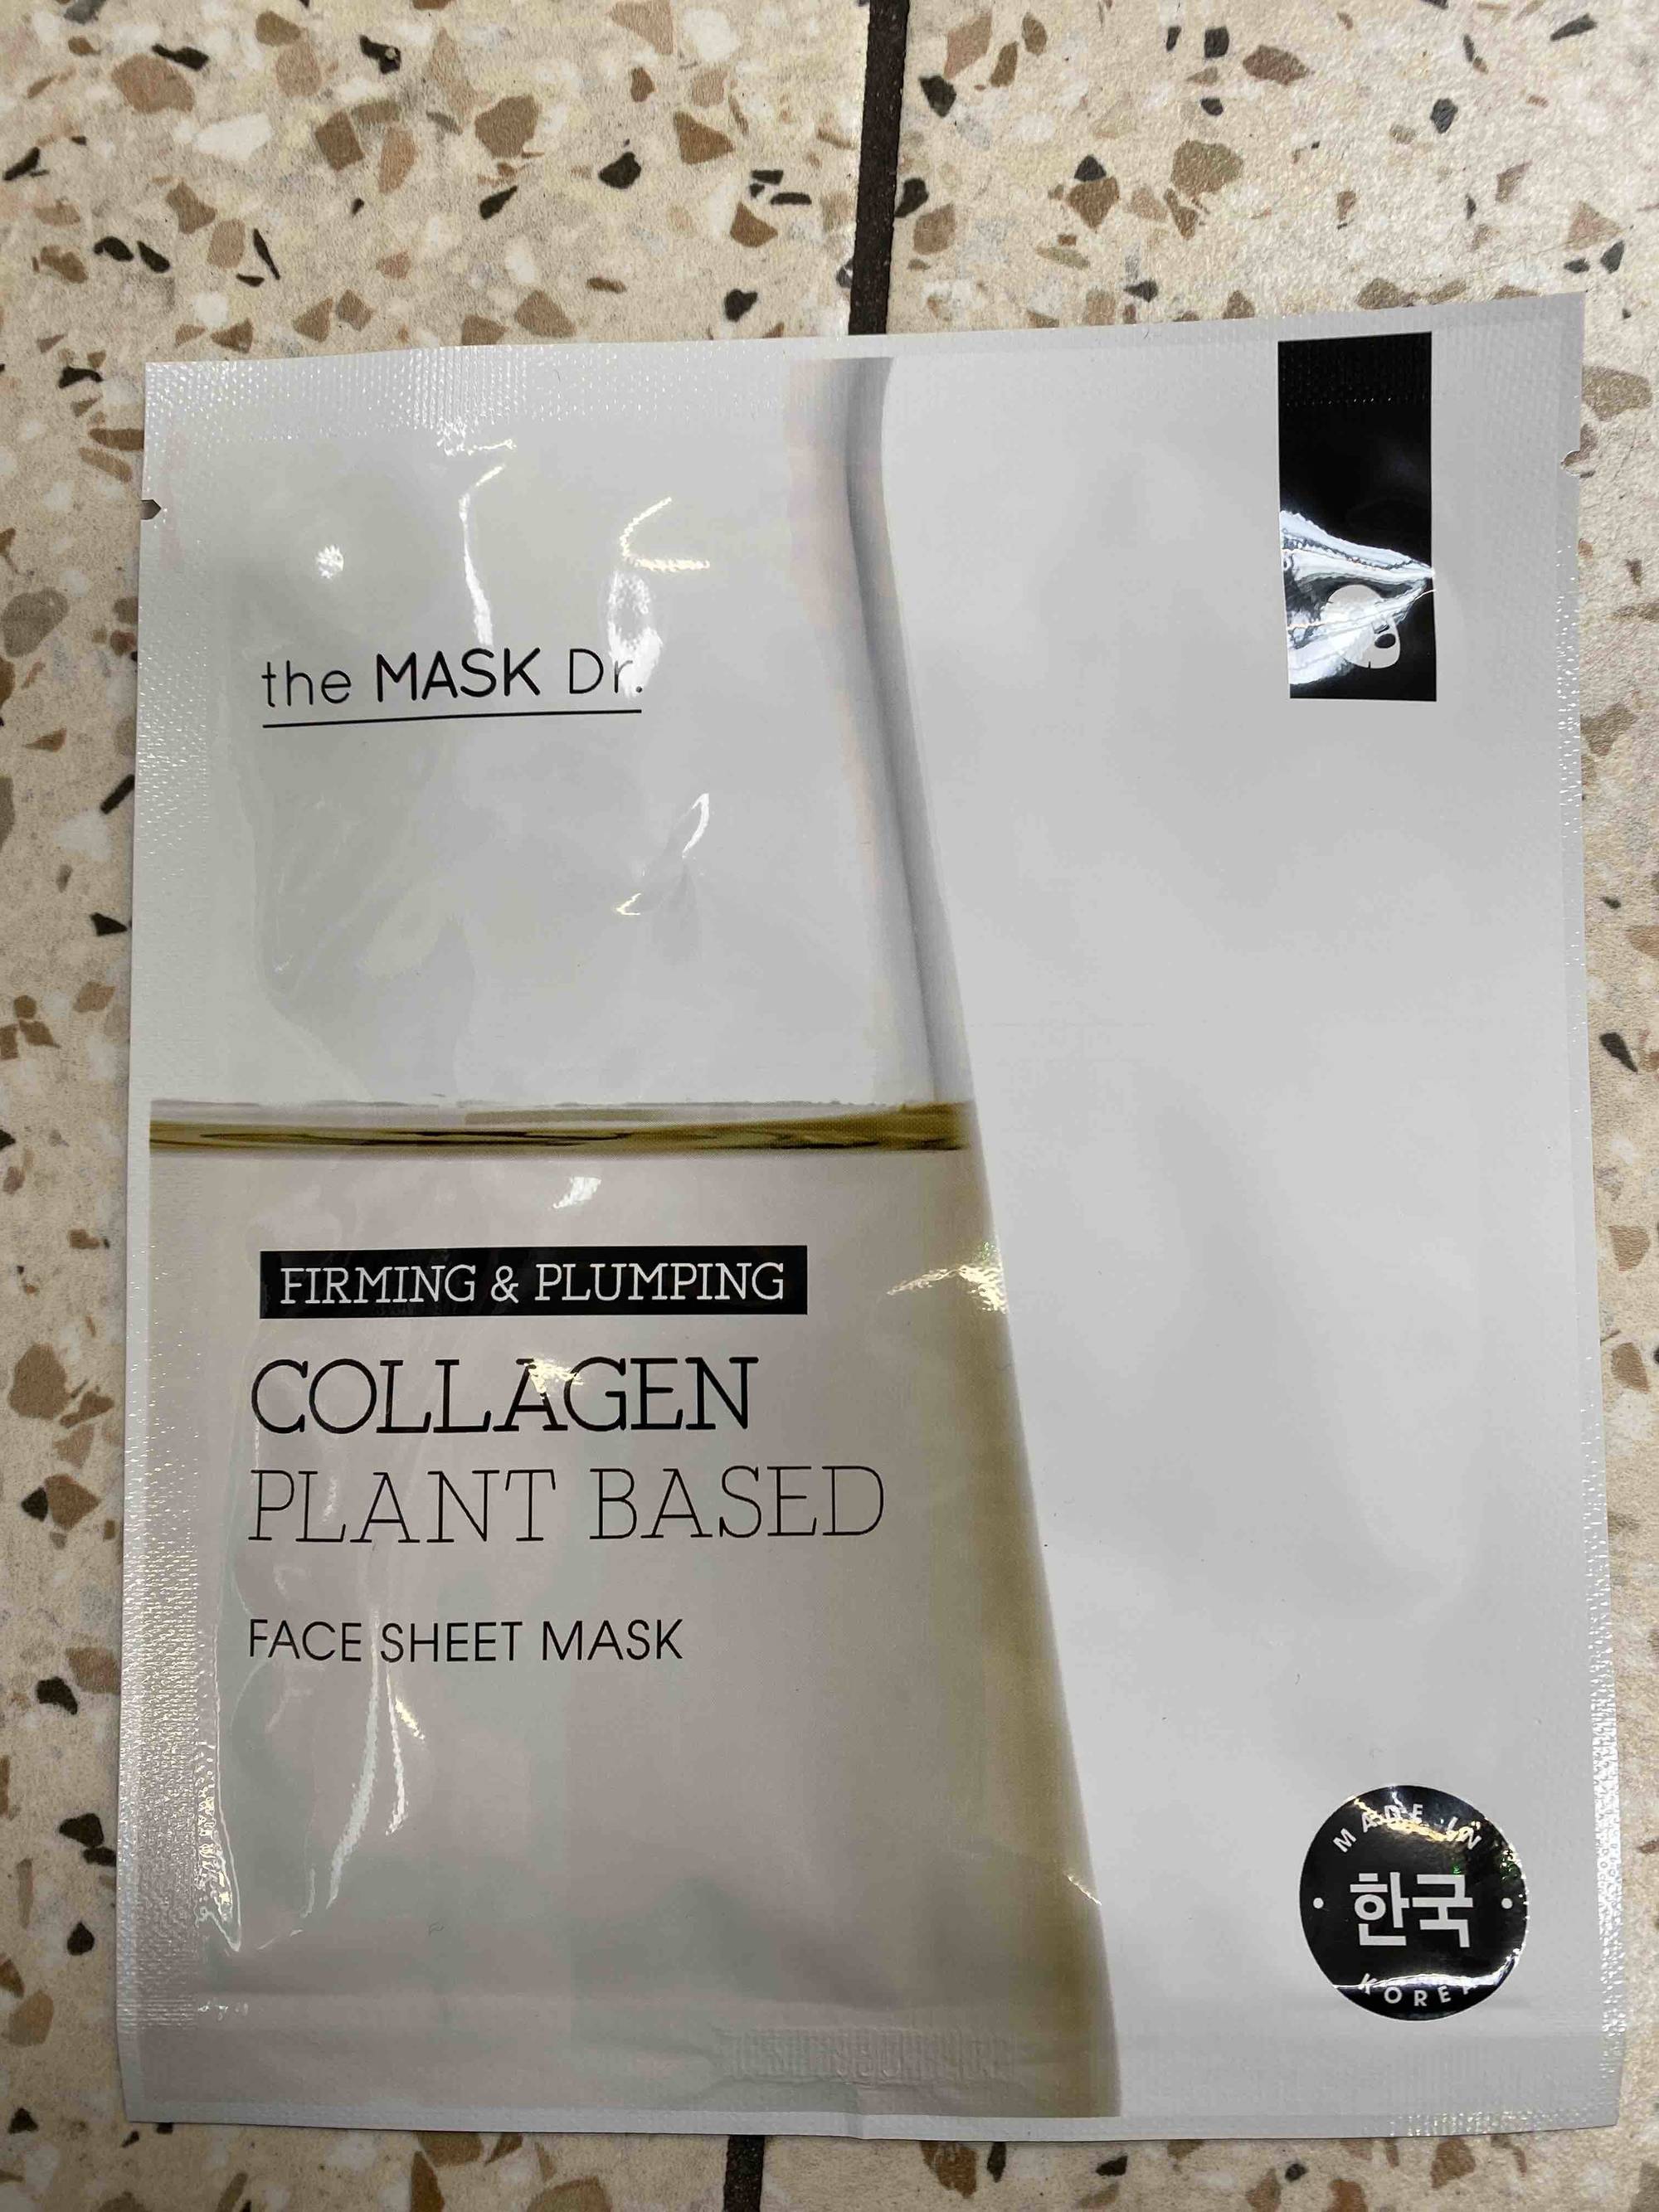 THE MASK DR. - Collagen plant based - Face sheet mask